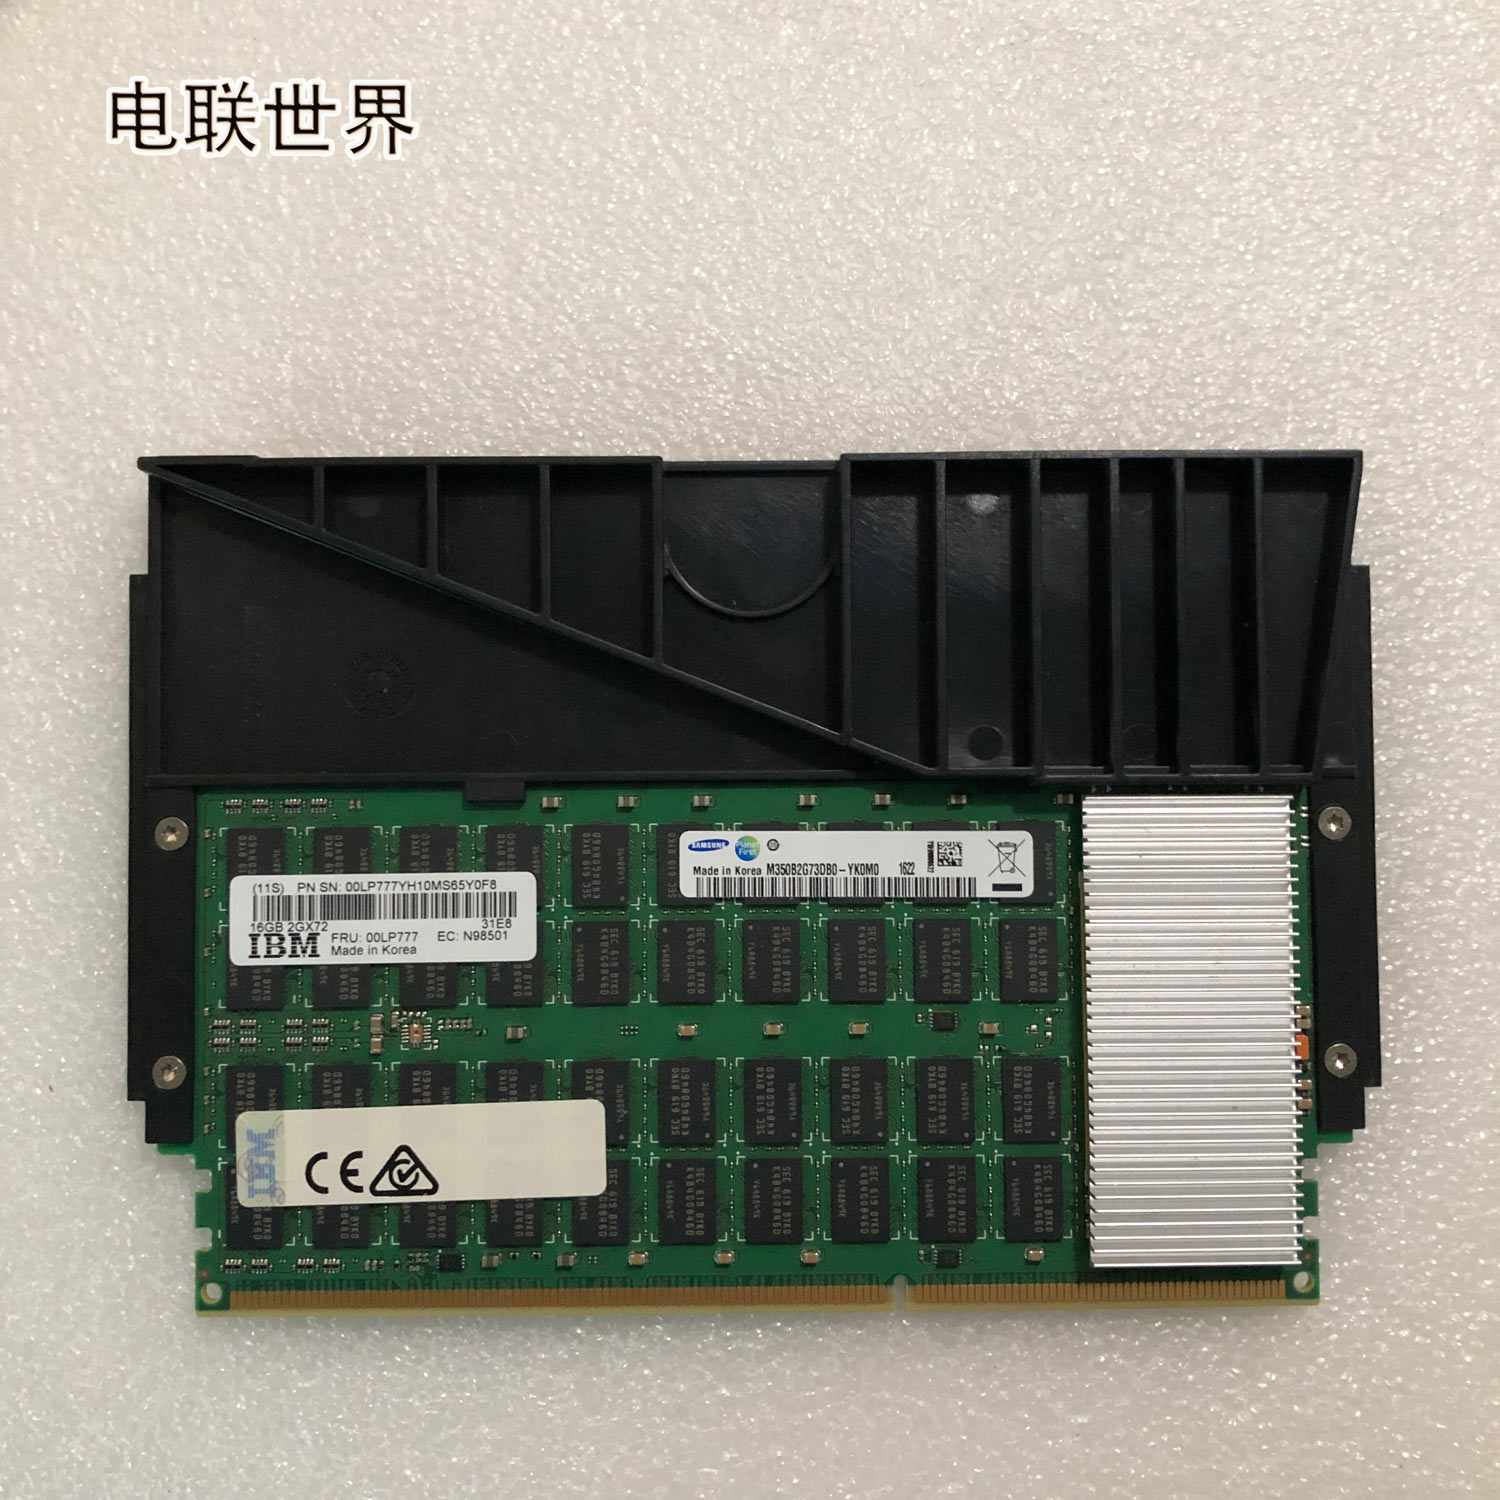 DDR3 内存条：虽已过时但仍在生产，曾经的辉煌与现在的市场状况  第1张